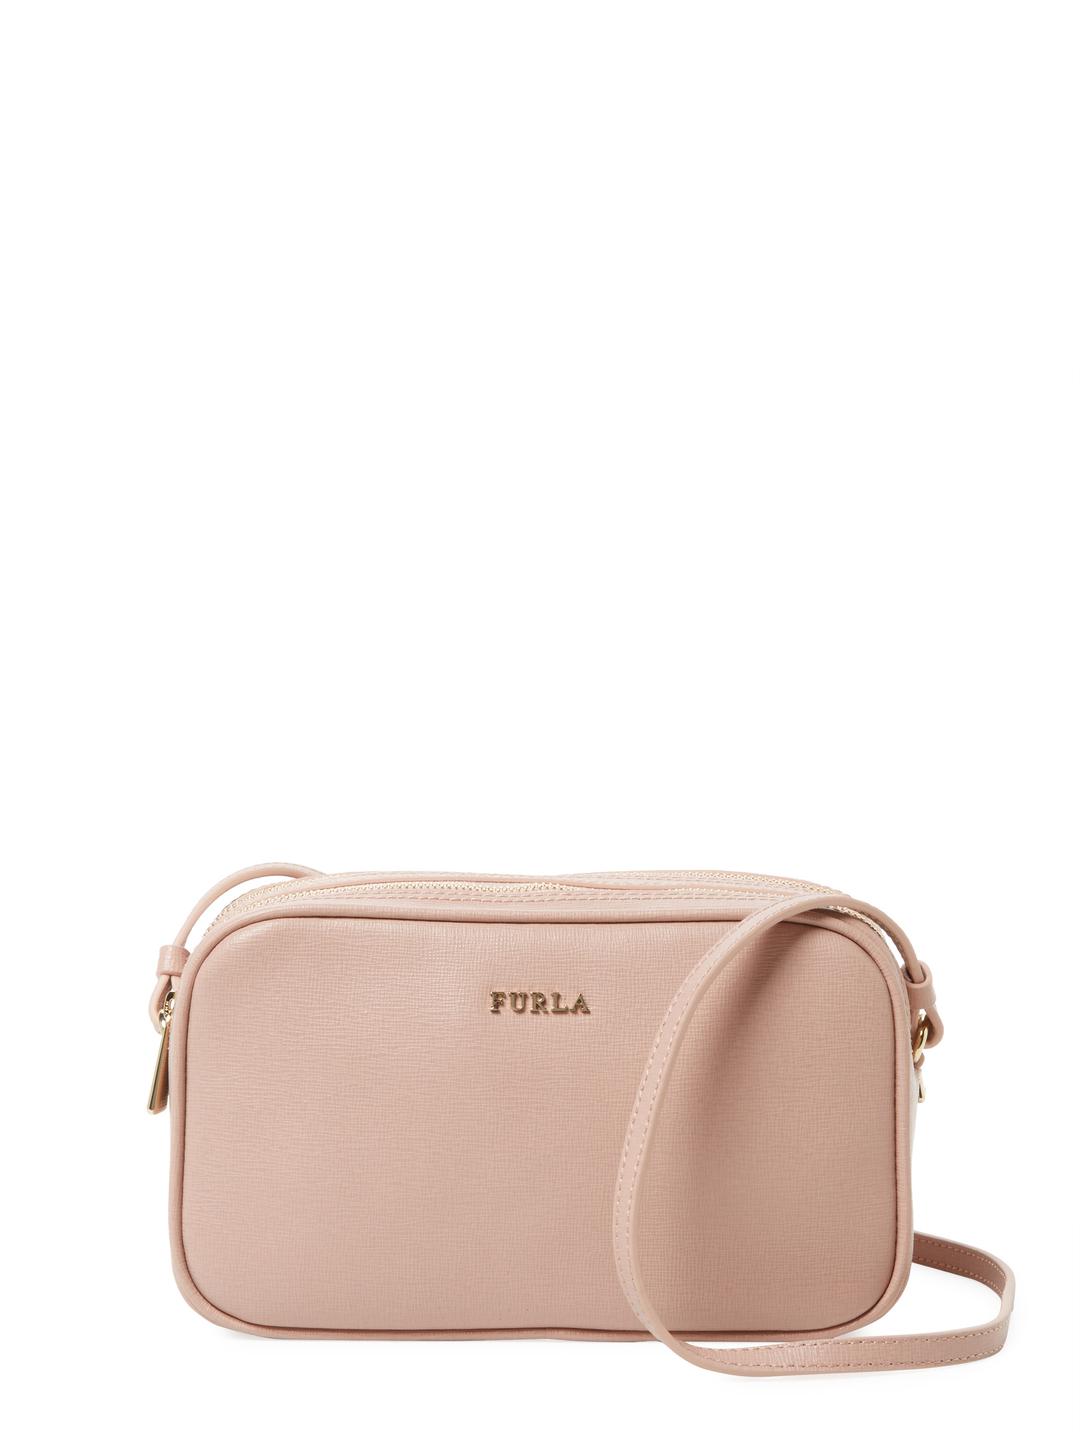 Furla Lilli Leather Crossbody Bag | Lyst